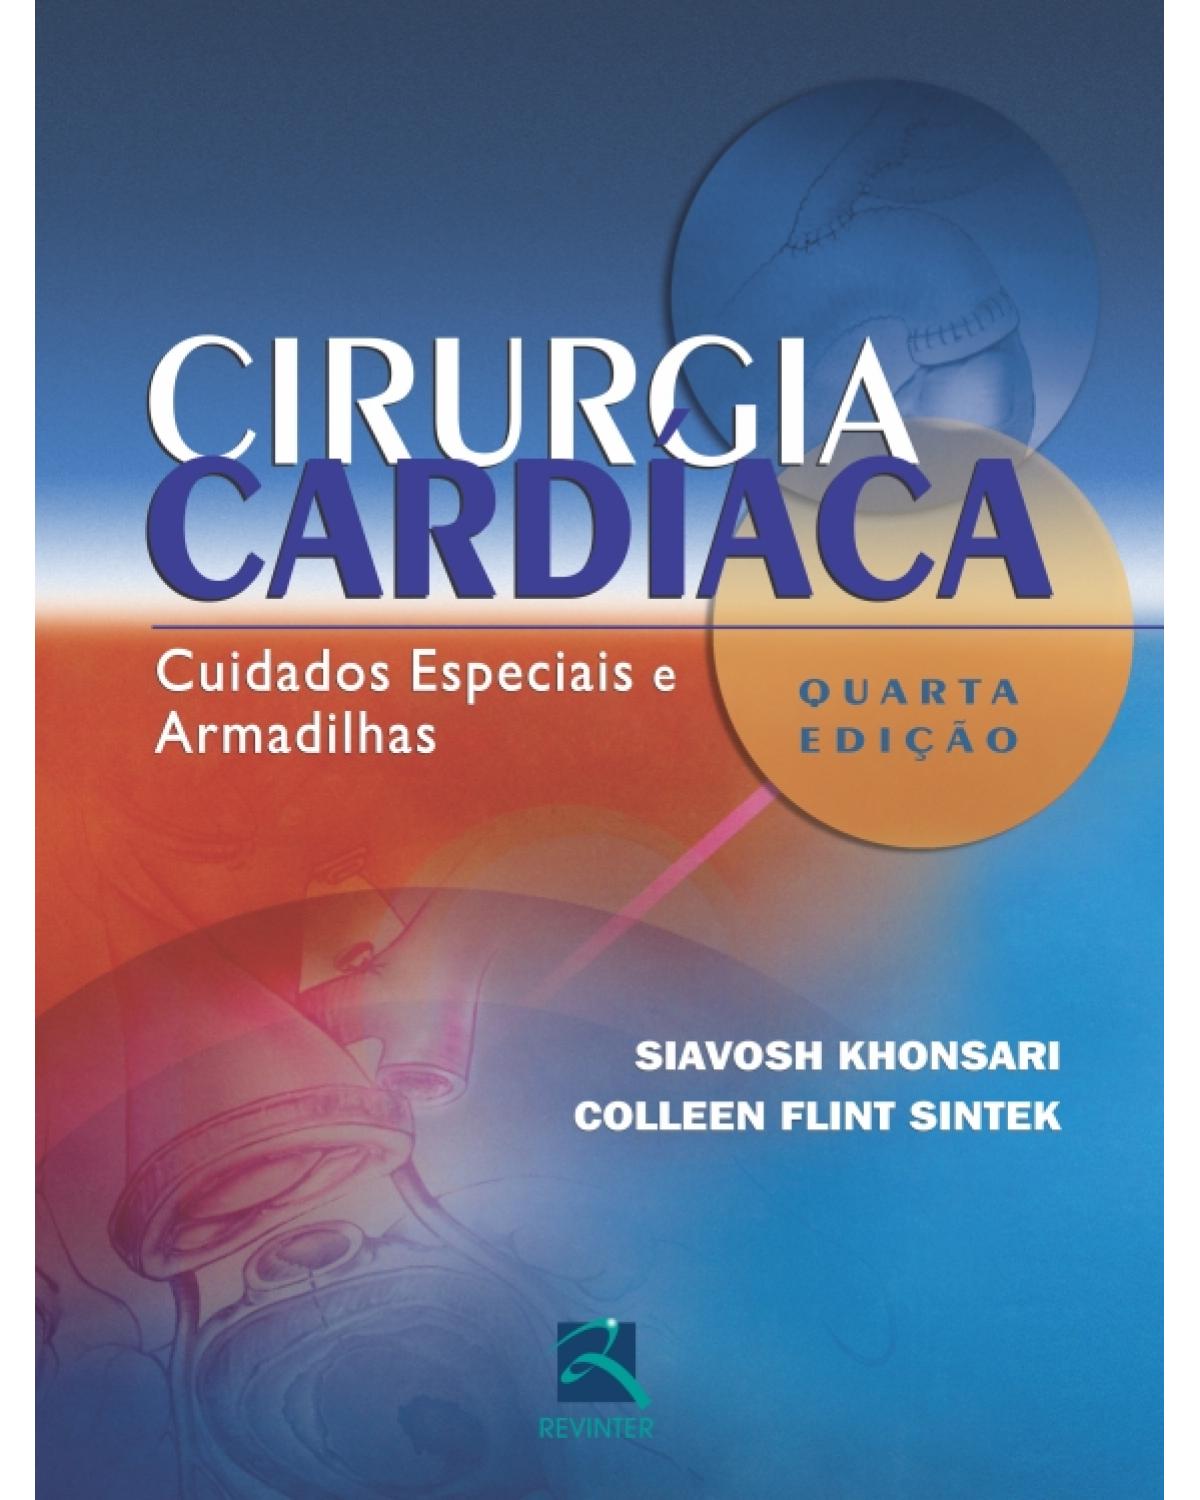 Cirurgia cardíaca - cuidados especiais e armadilhas - 4ª Edição | 2011